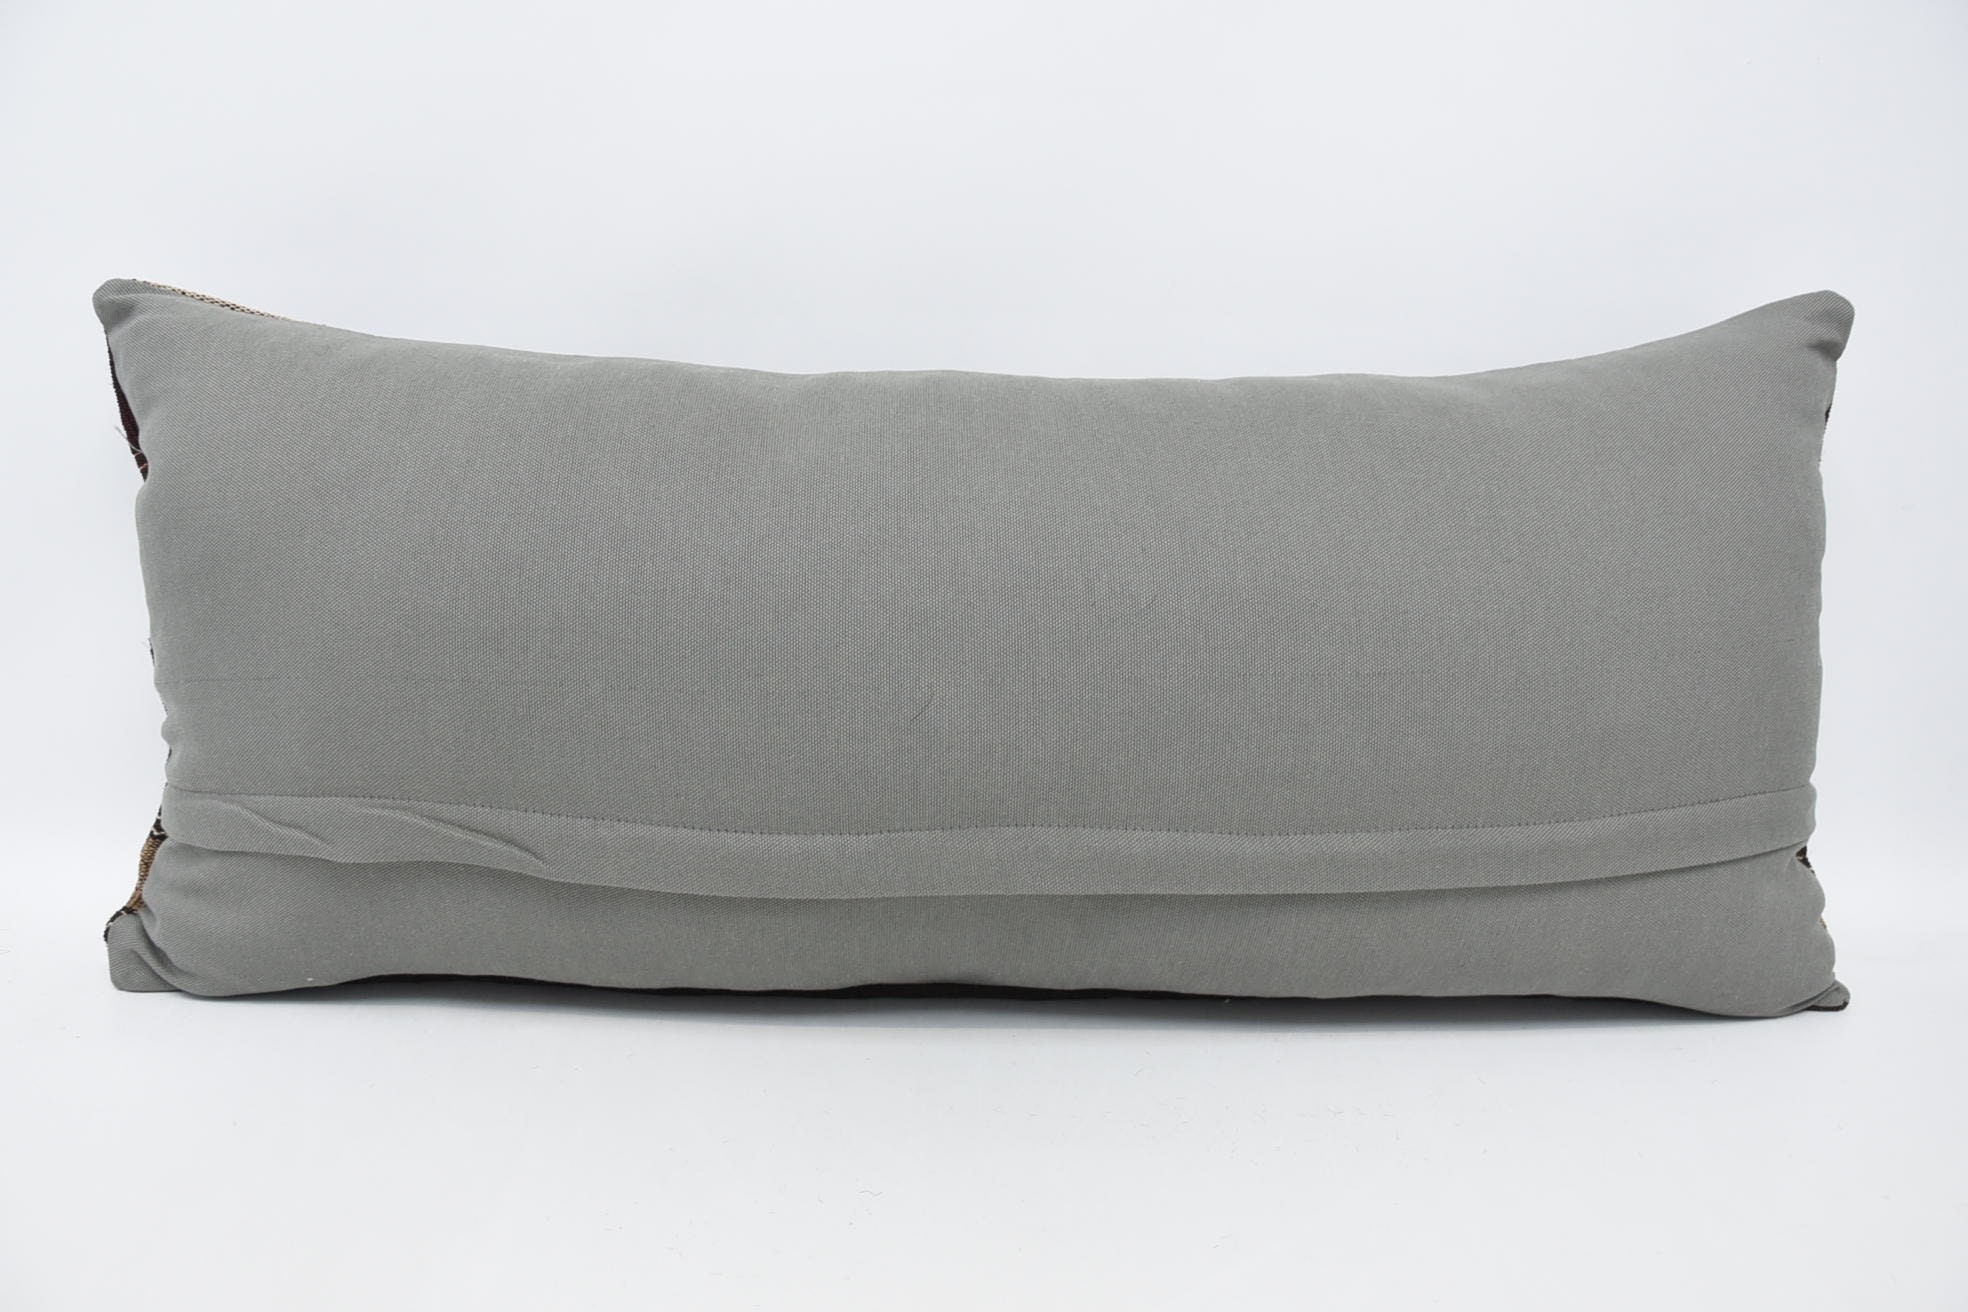 Kilim Pillow, Vintage Pillow, Vintage Kilim Pillow, Ethnic Pillow Case, 16"x36" Brown Pillow Sham, Ottoman Pillow Sham